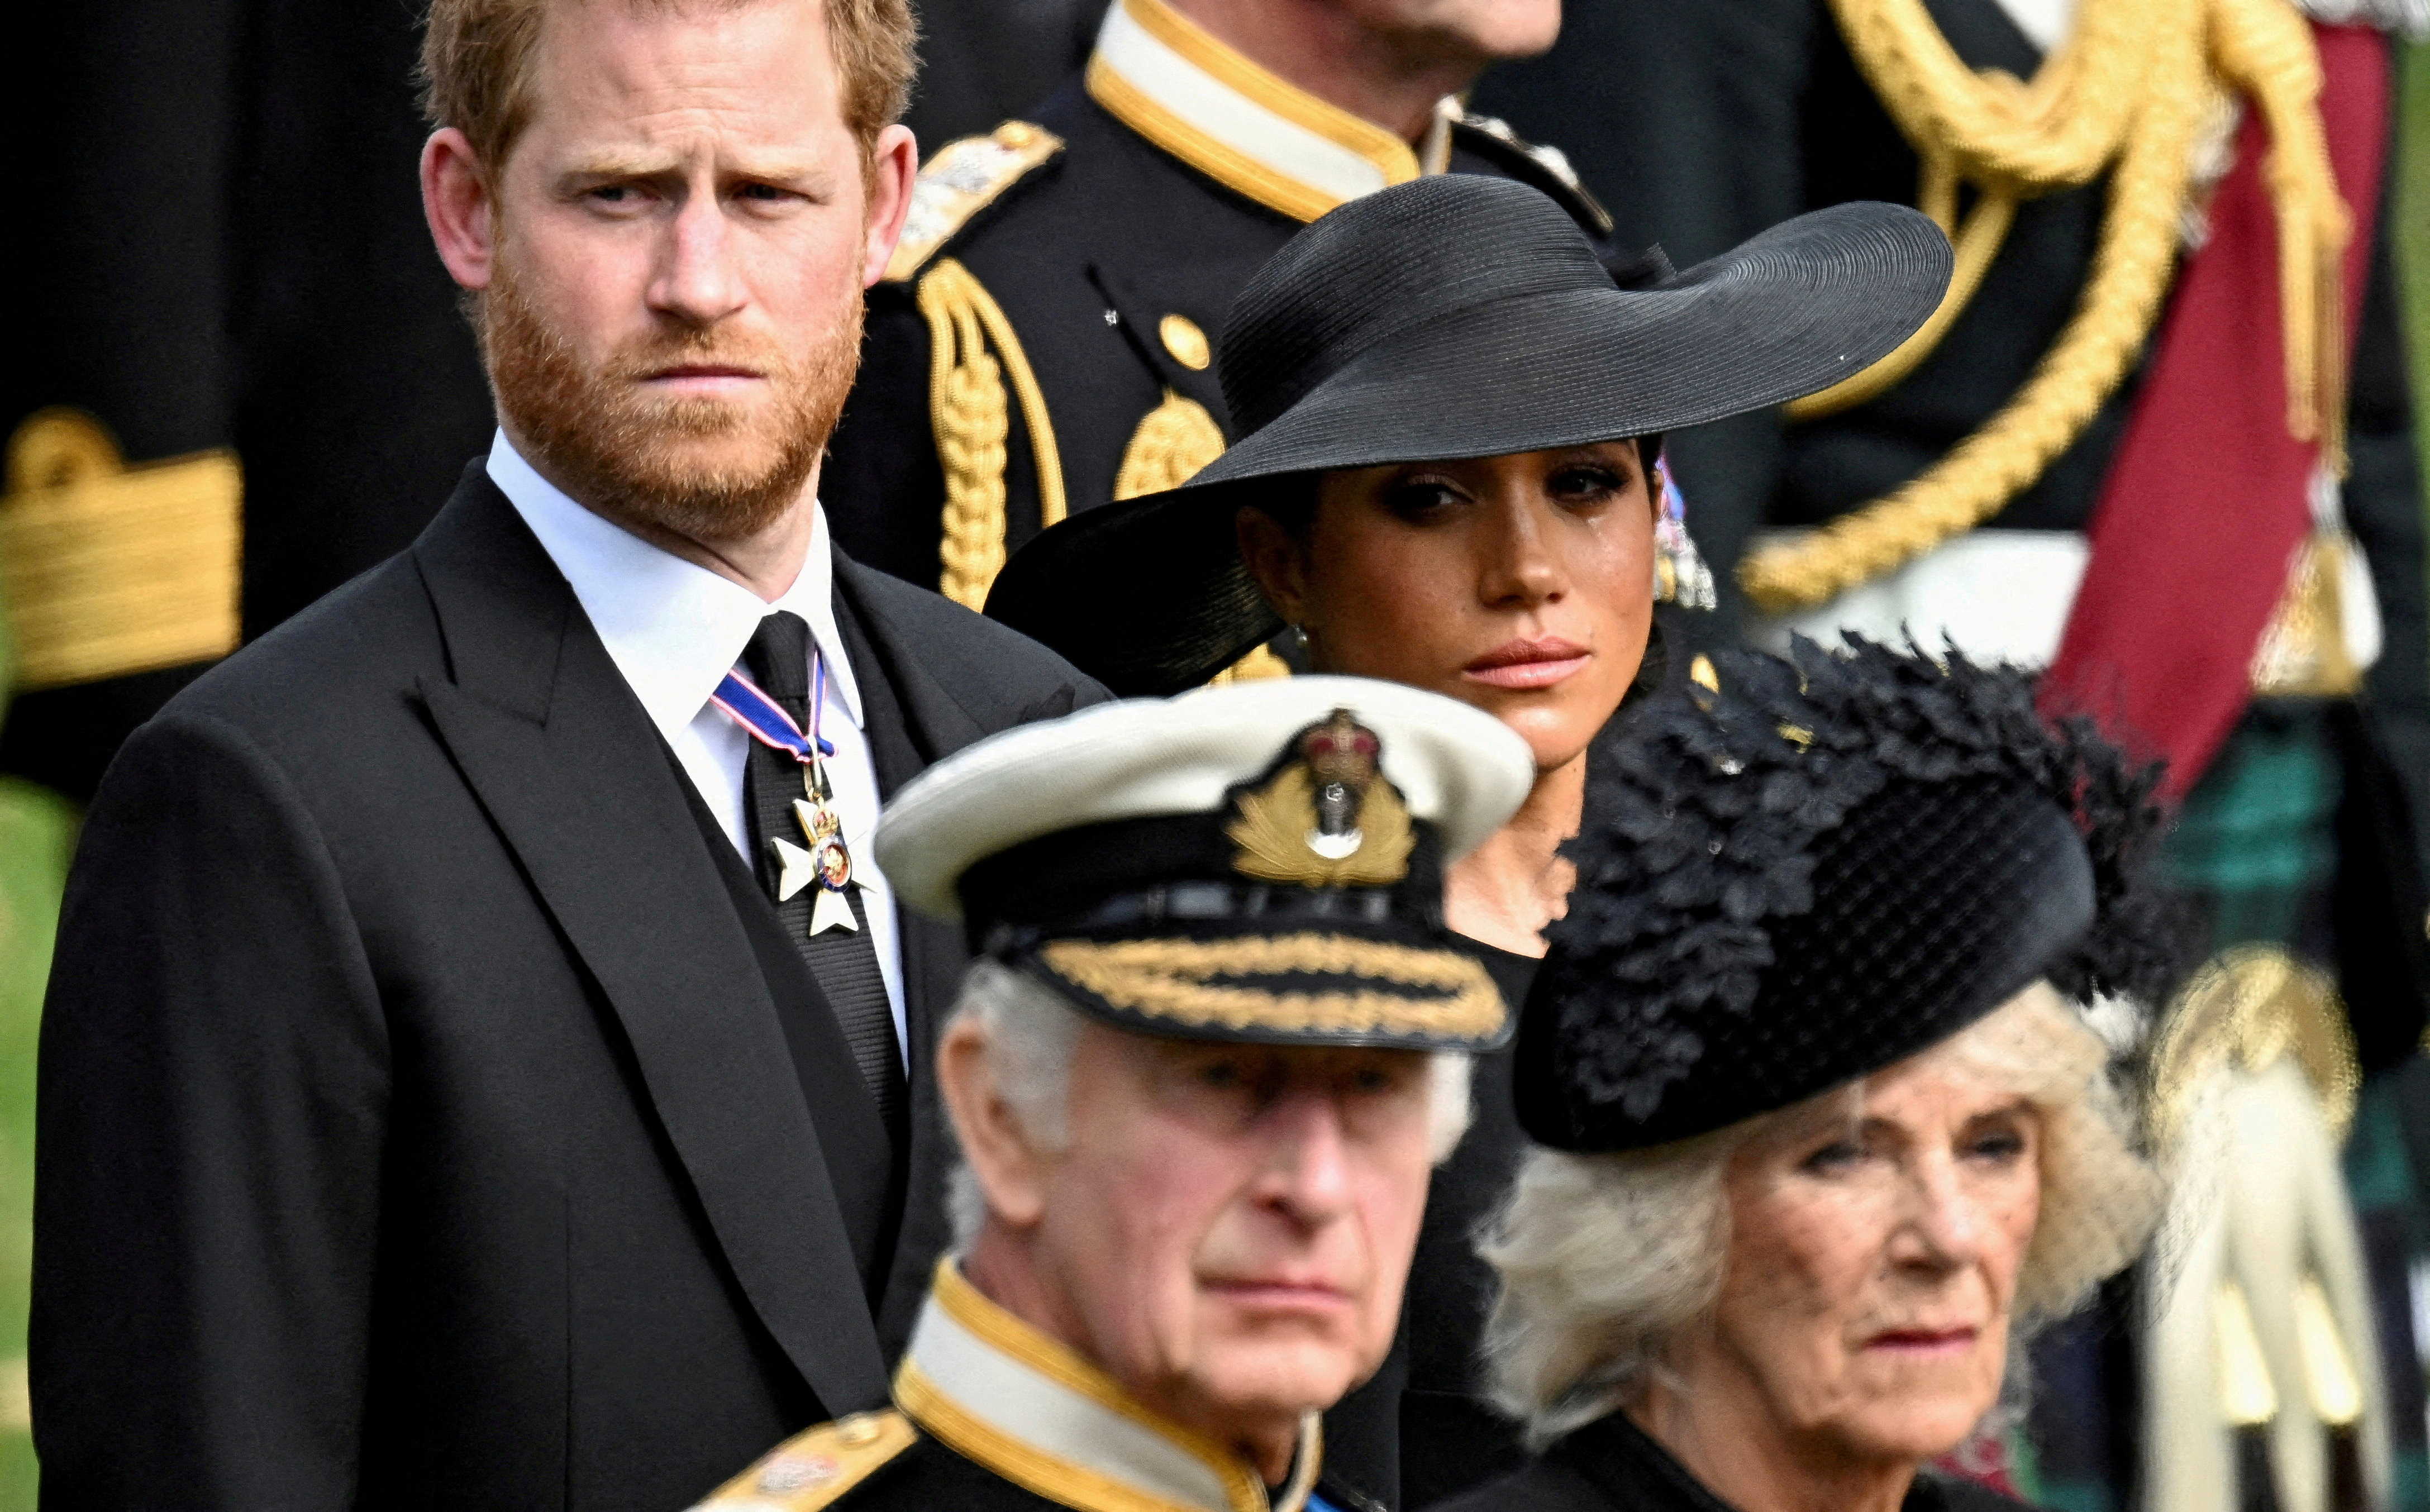 La duquesa de Sussex llora mientras ella, el príncipe Harry, el duque de Sussex, la reina Camila y el rey Carlos II asisten al funeral de estado y entierro de la reina Isabel en Londres, el 19 de septiembre de 2022 (Reuters)